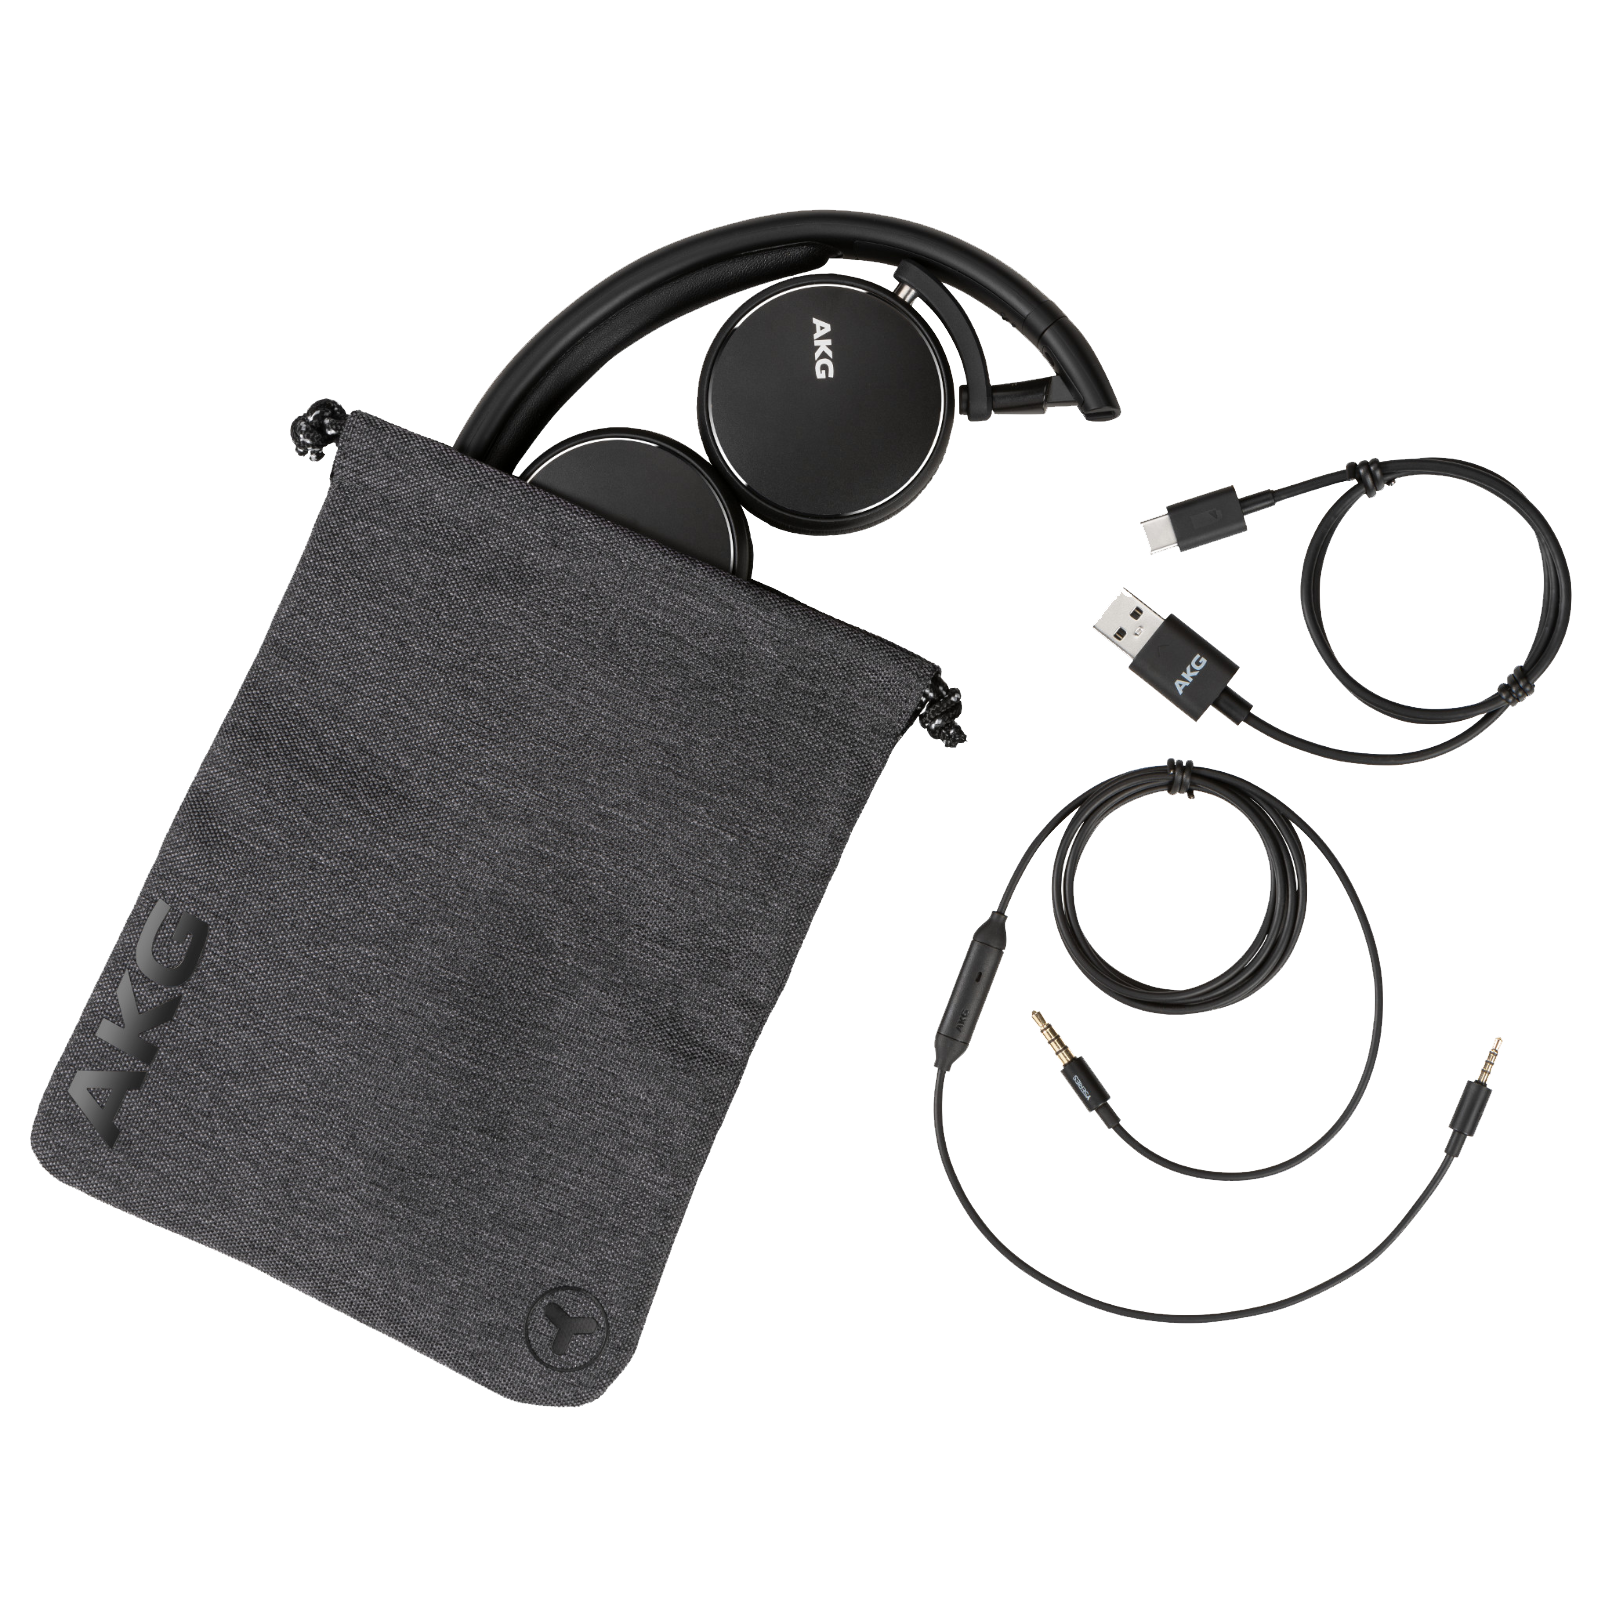 AKG Y400 WIRELESS - Black - Wireless mini on-ear headphones - Detailshot 3